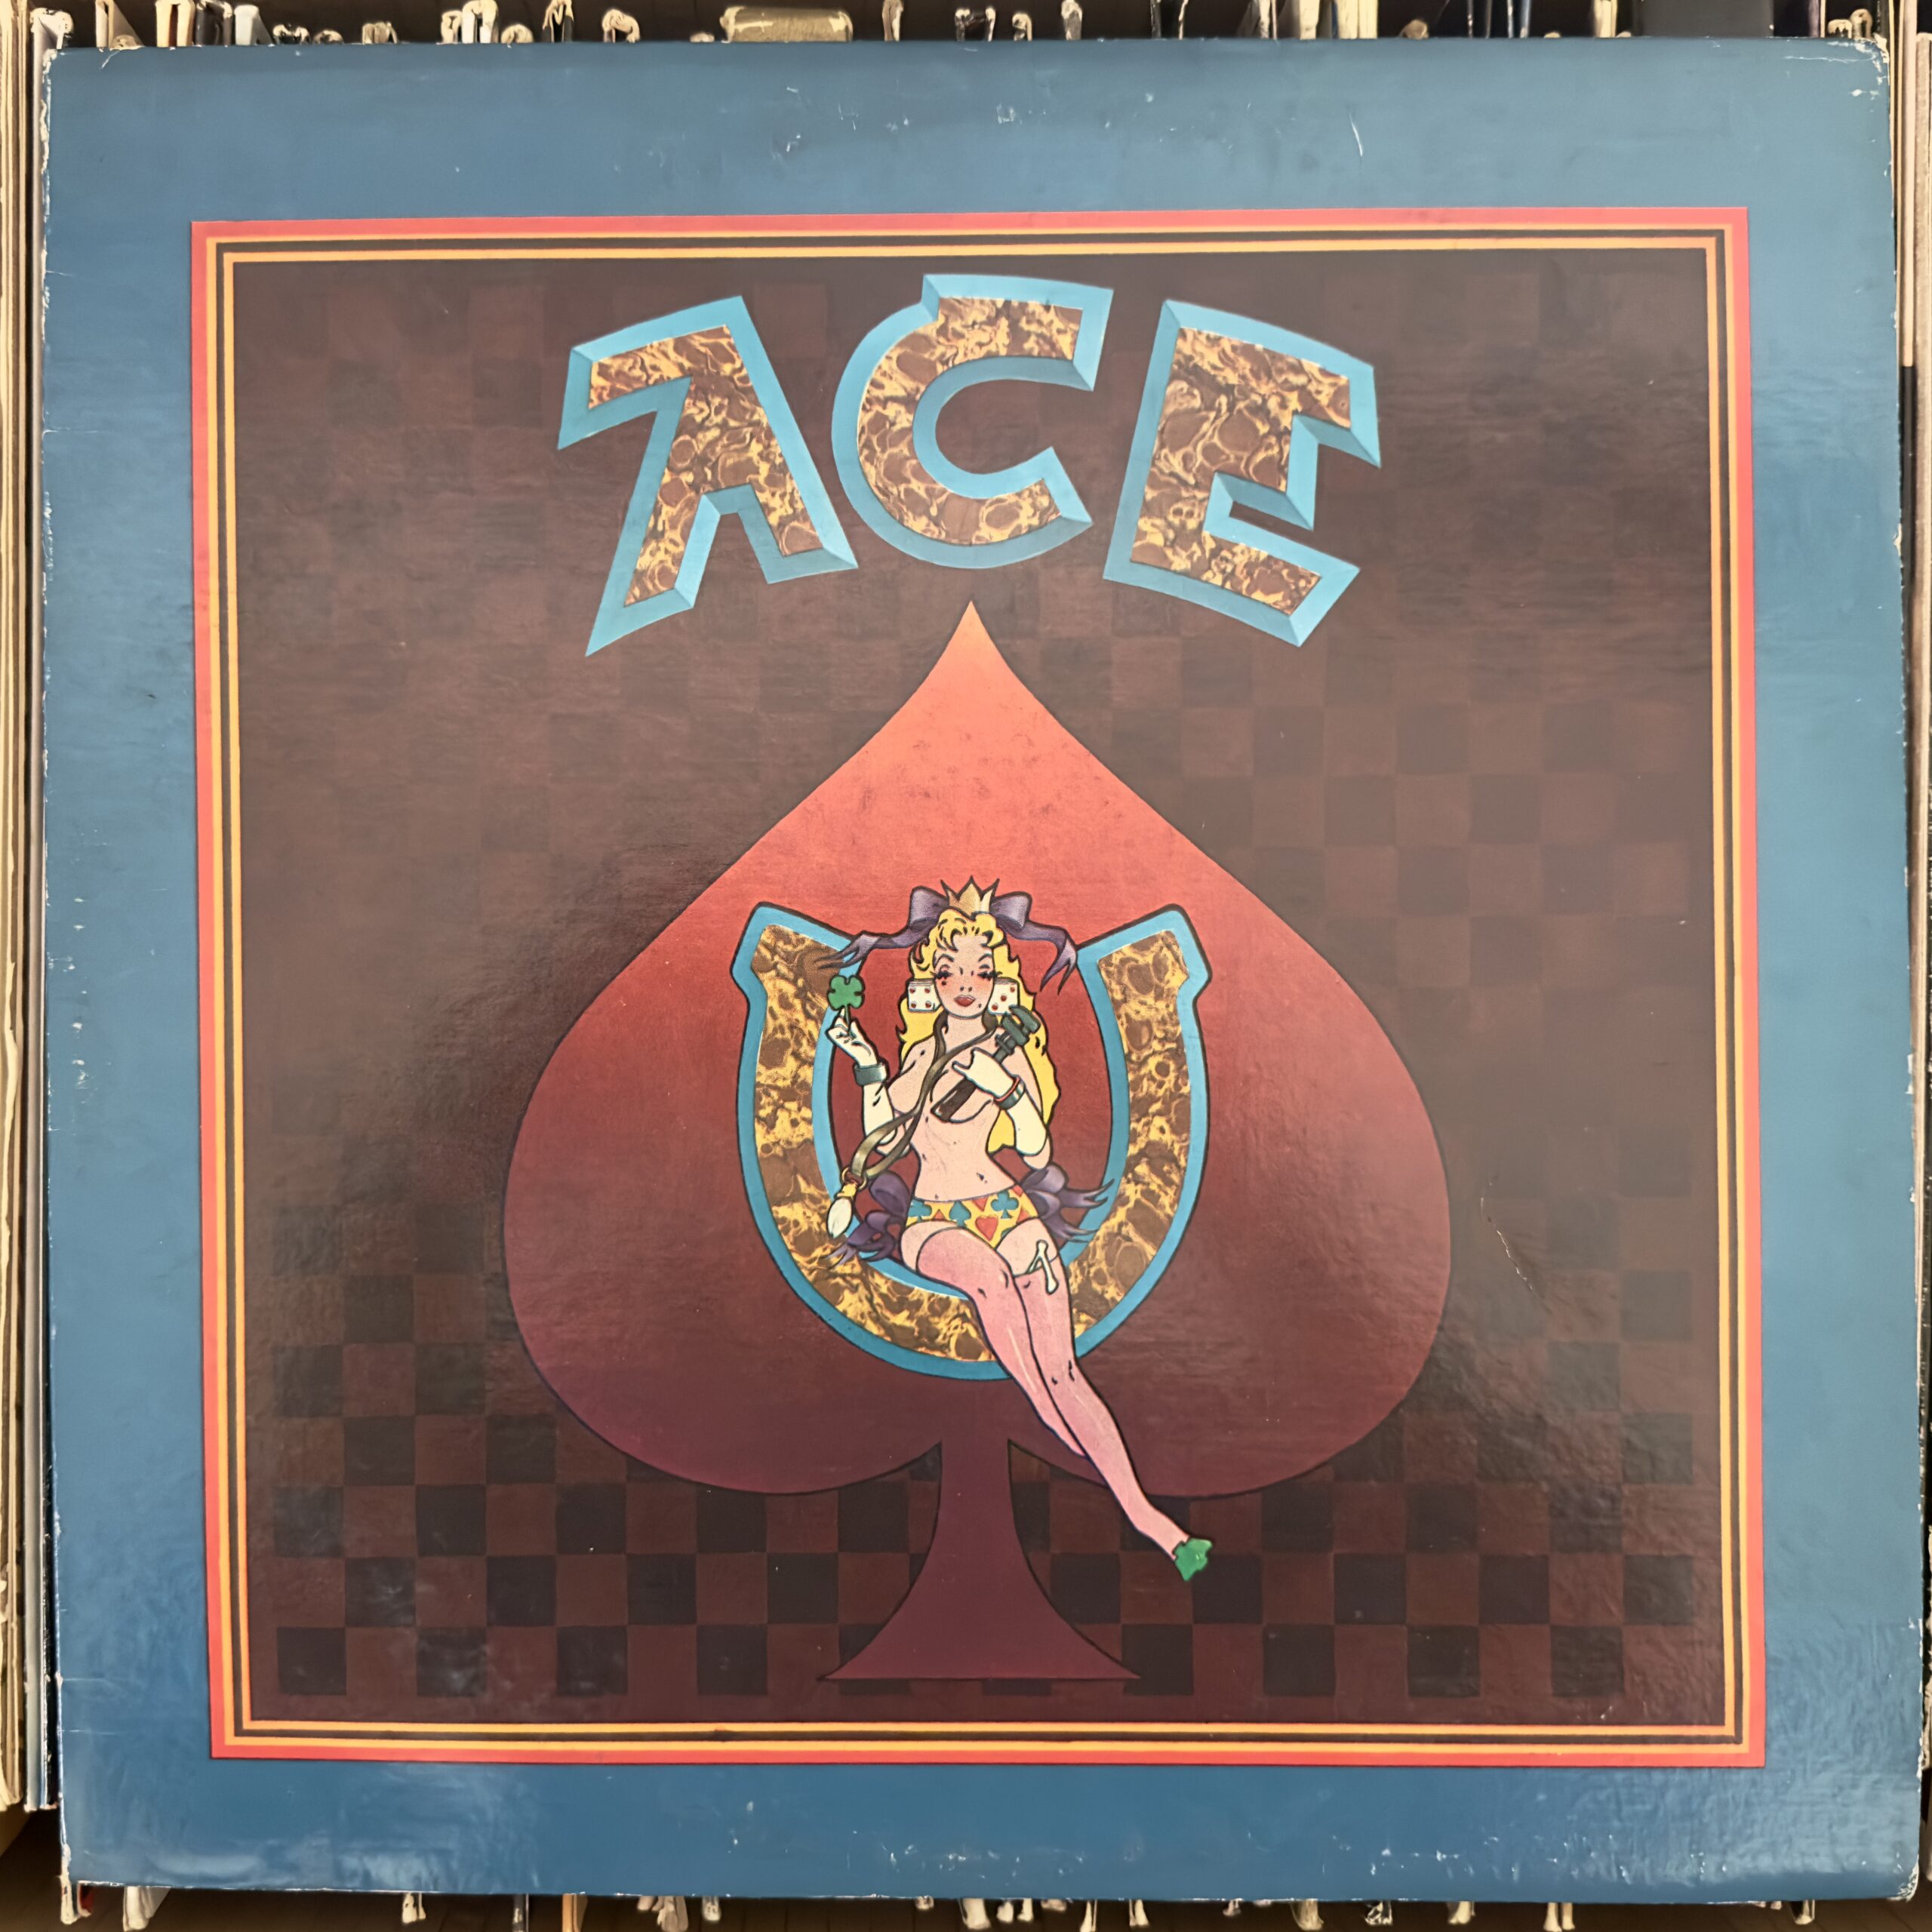 Ace by Bob Weir